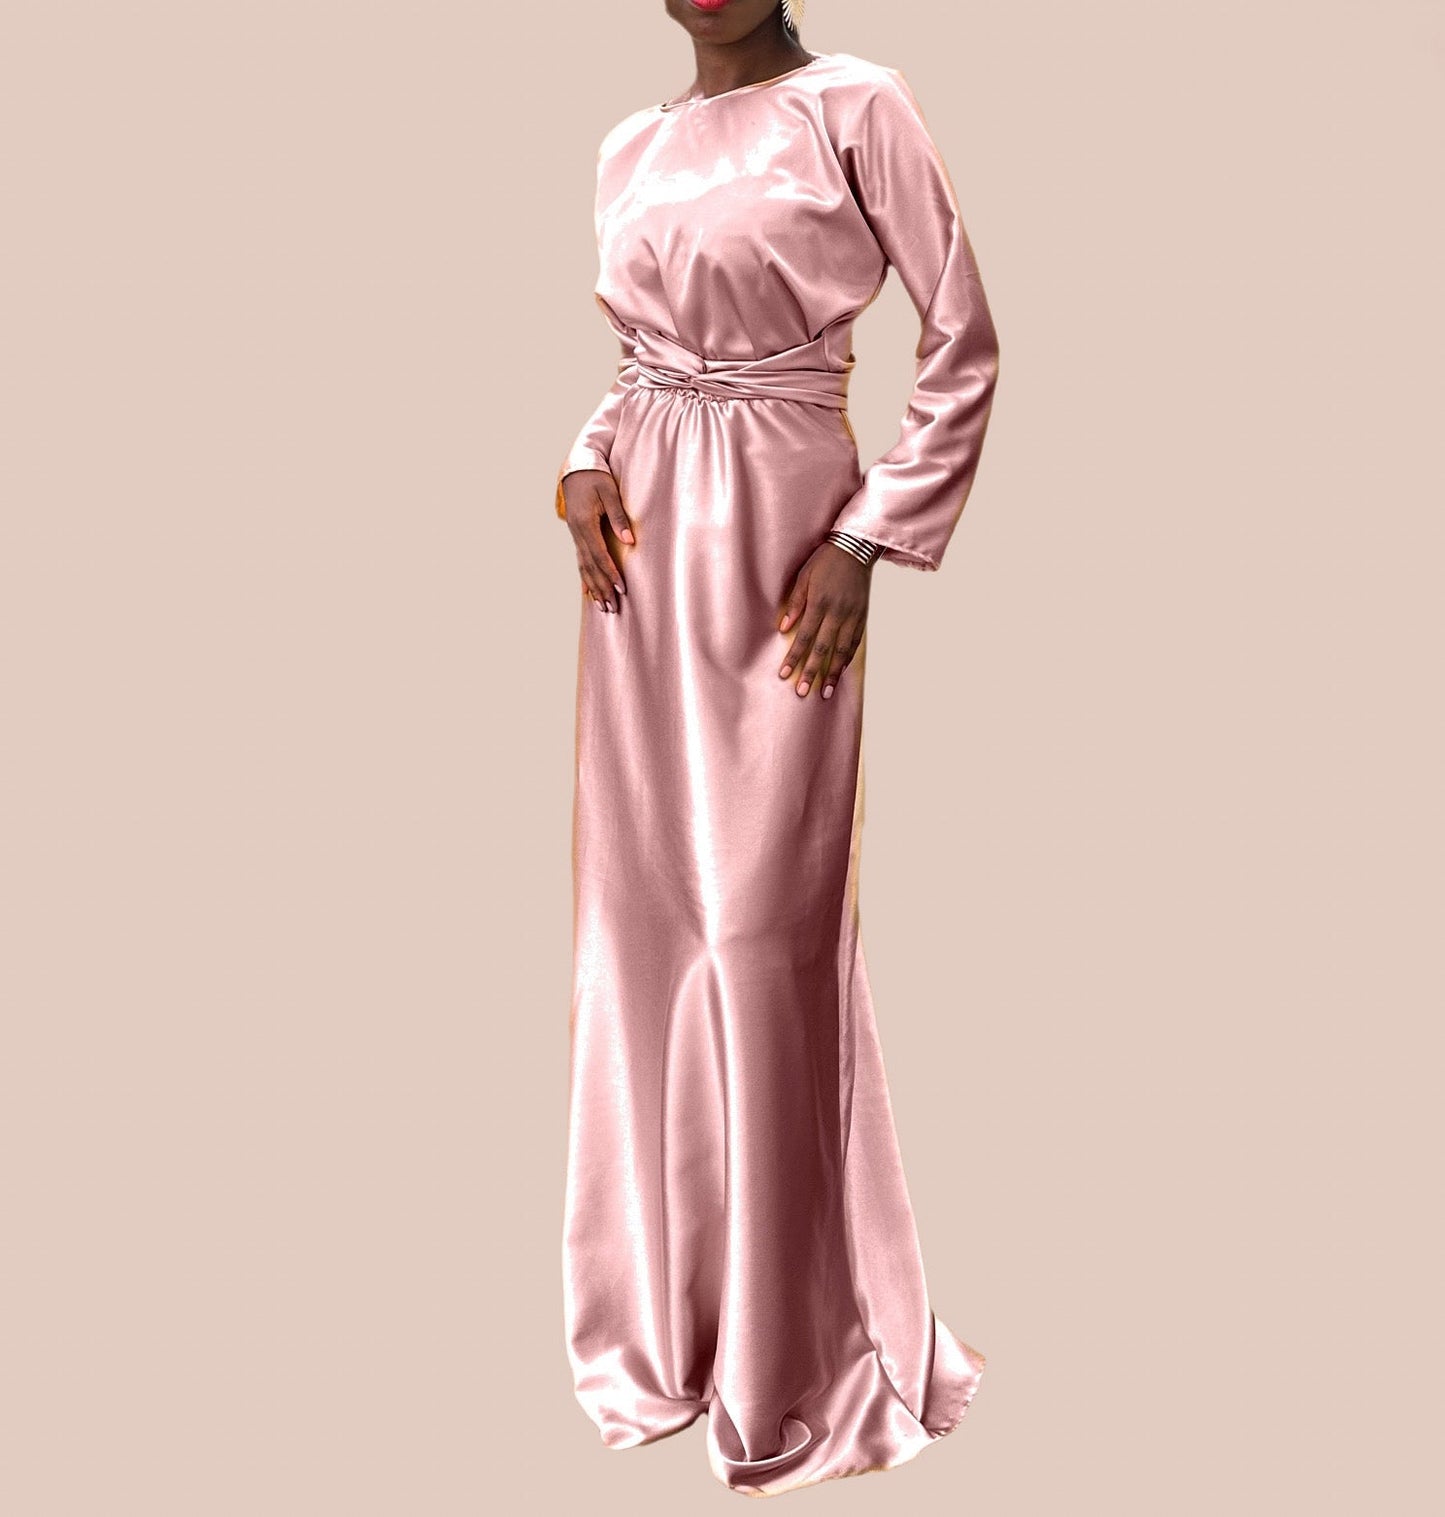 Robe demoiselle d'honneur Mastour Beige abricot - Robe de Soiree en Soie - Choix de couleur - Kaysol Couture